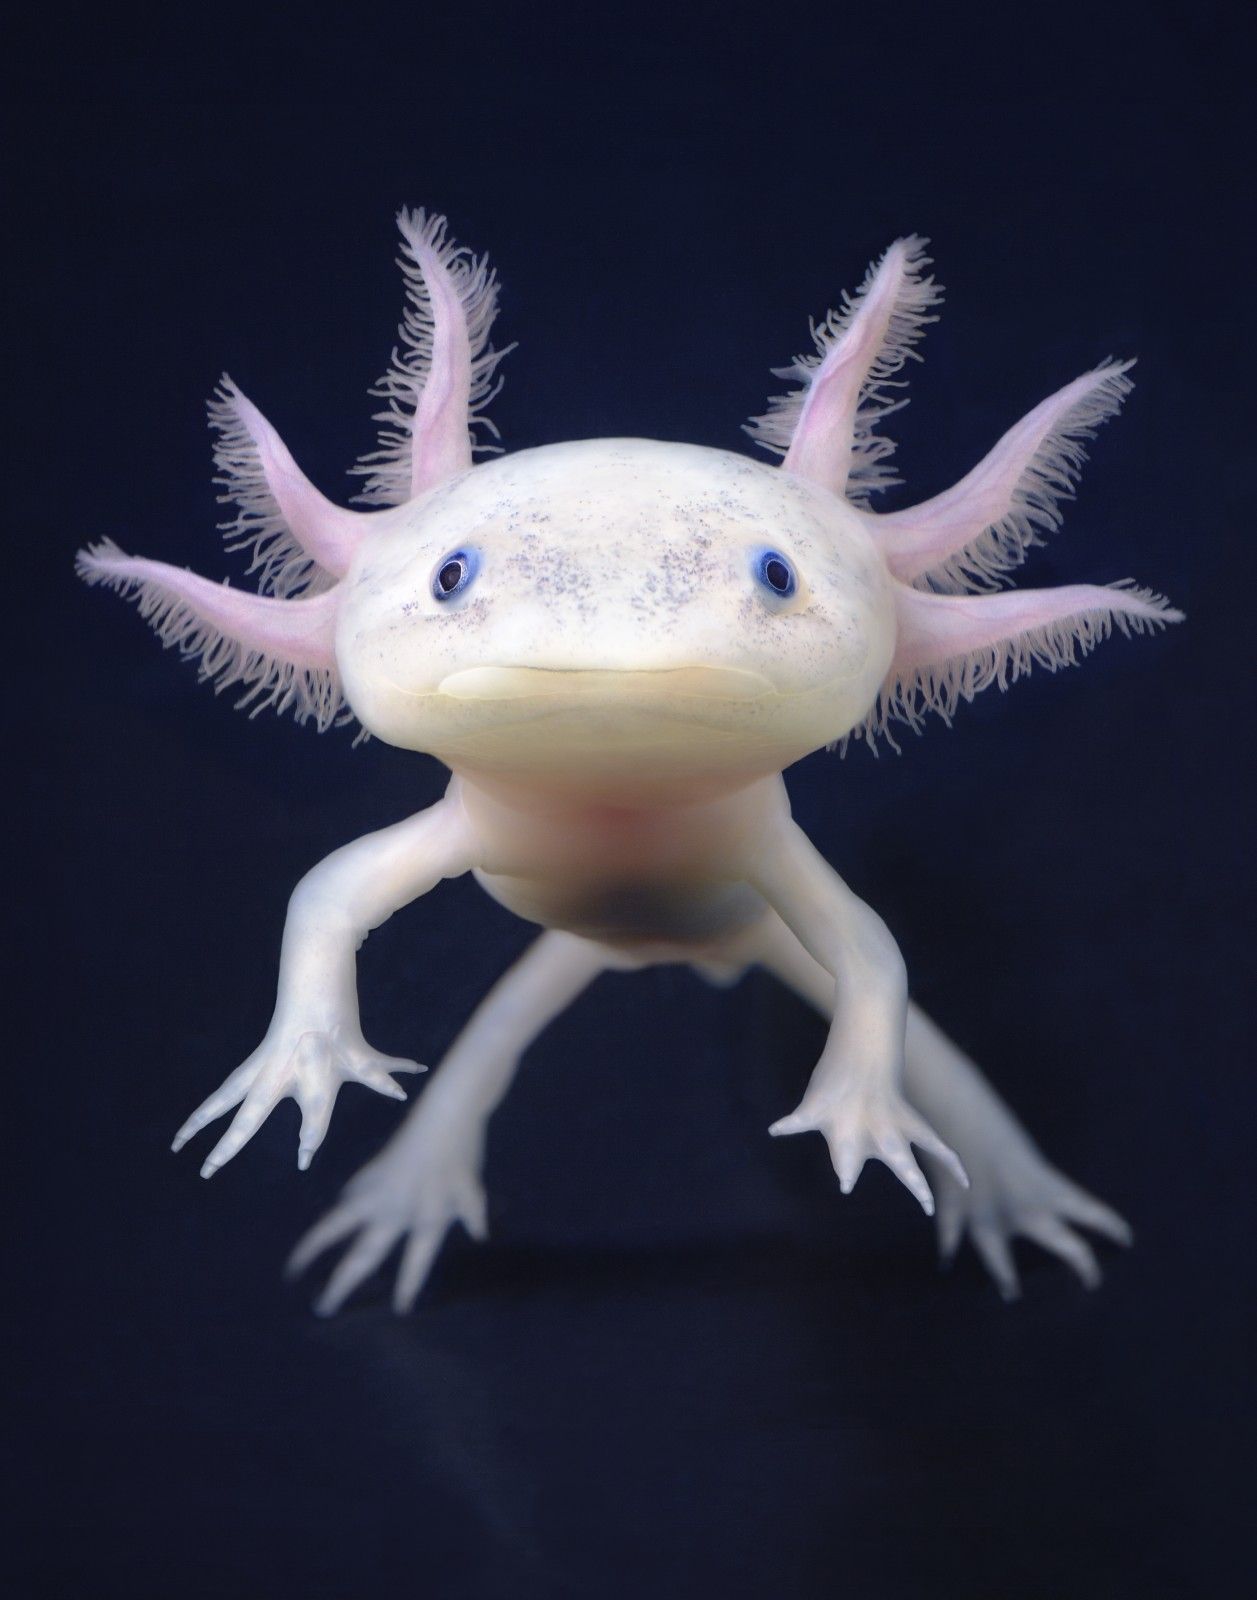 PsBattle: a floaty axolotl: photohopbattles